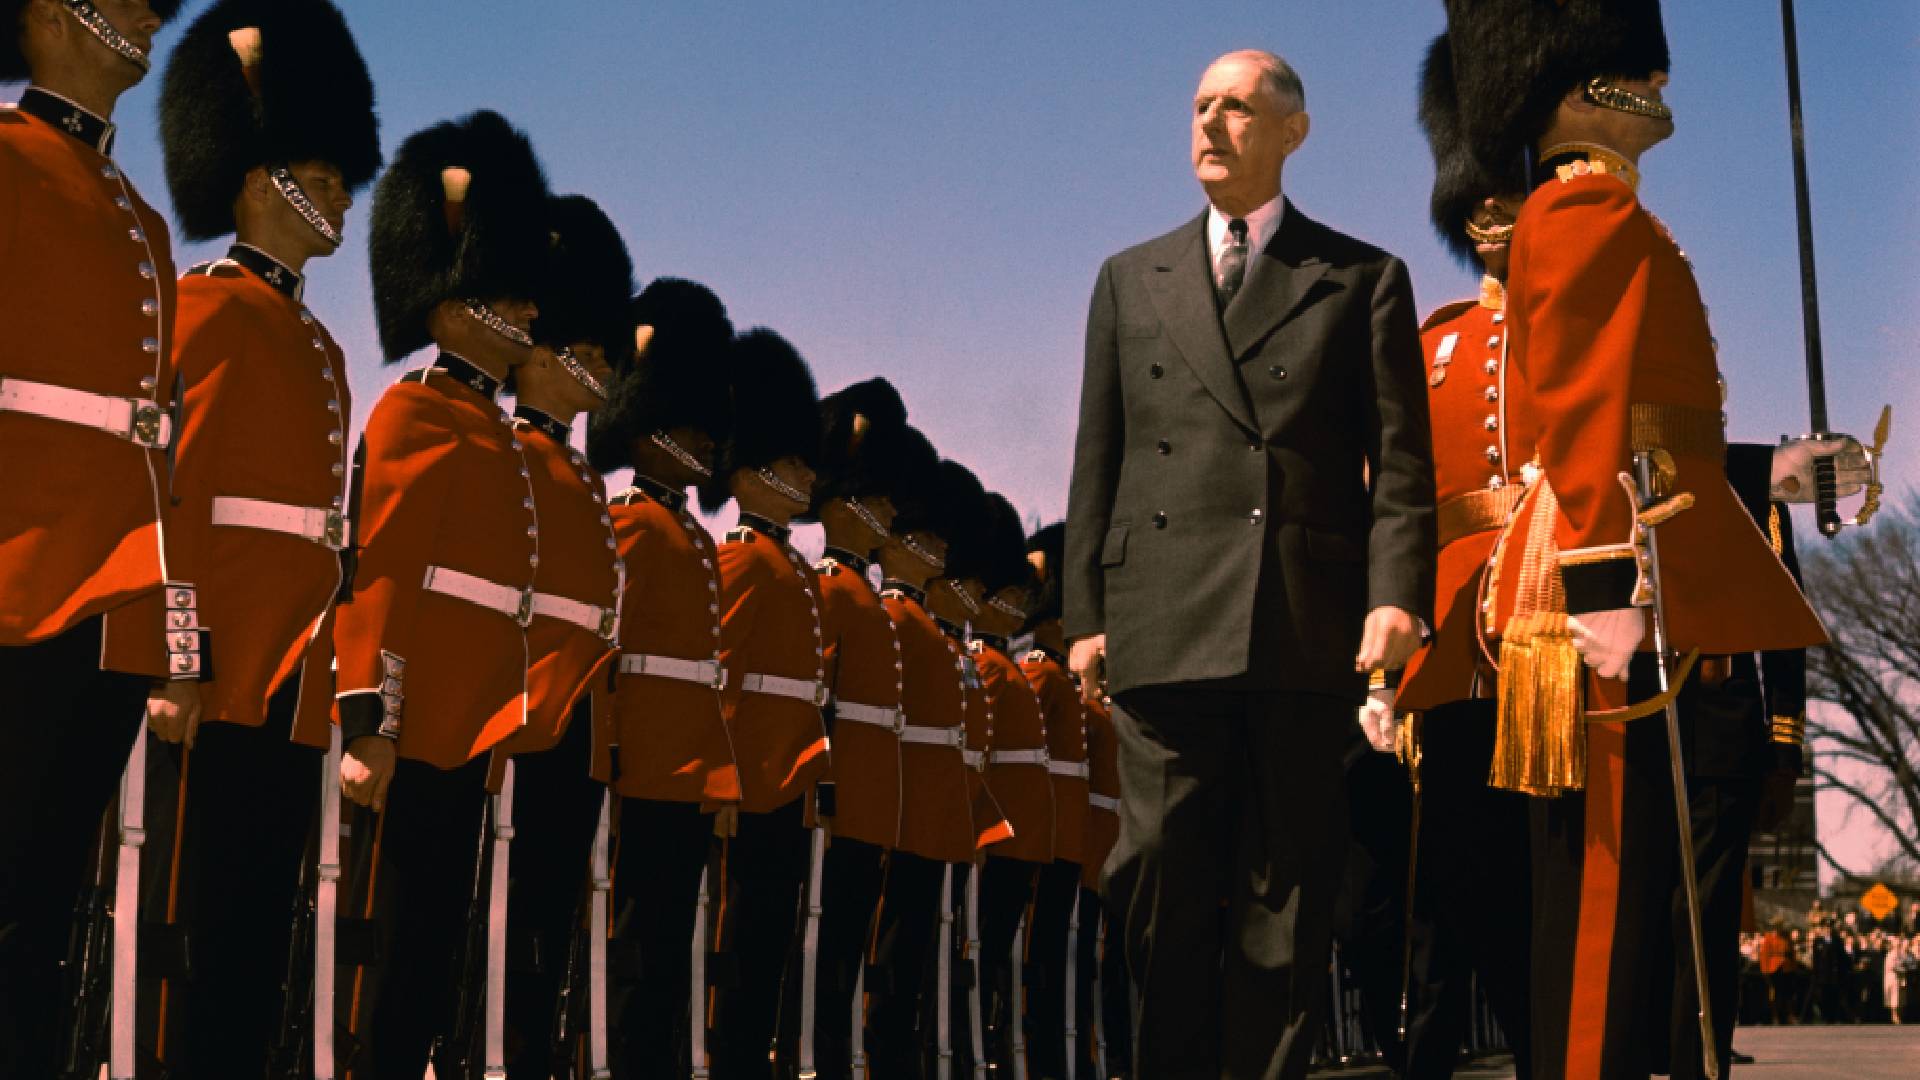 Generál prezidentem. Charles de Gaulle vykonává přehlídku čestné stráže v Londýně